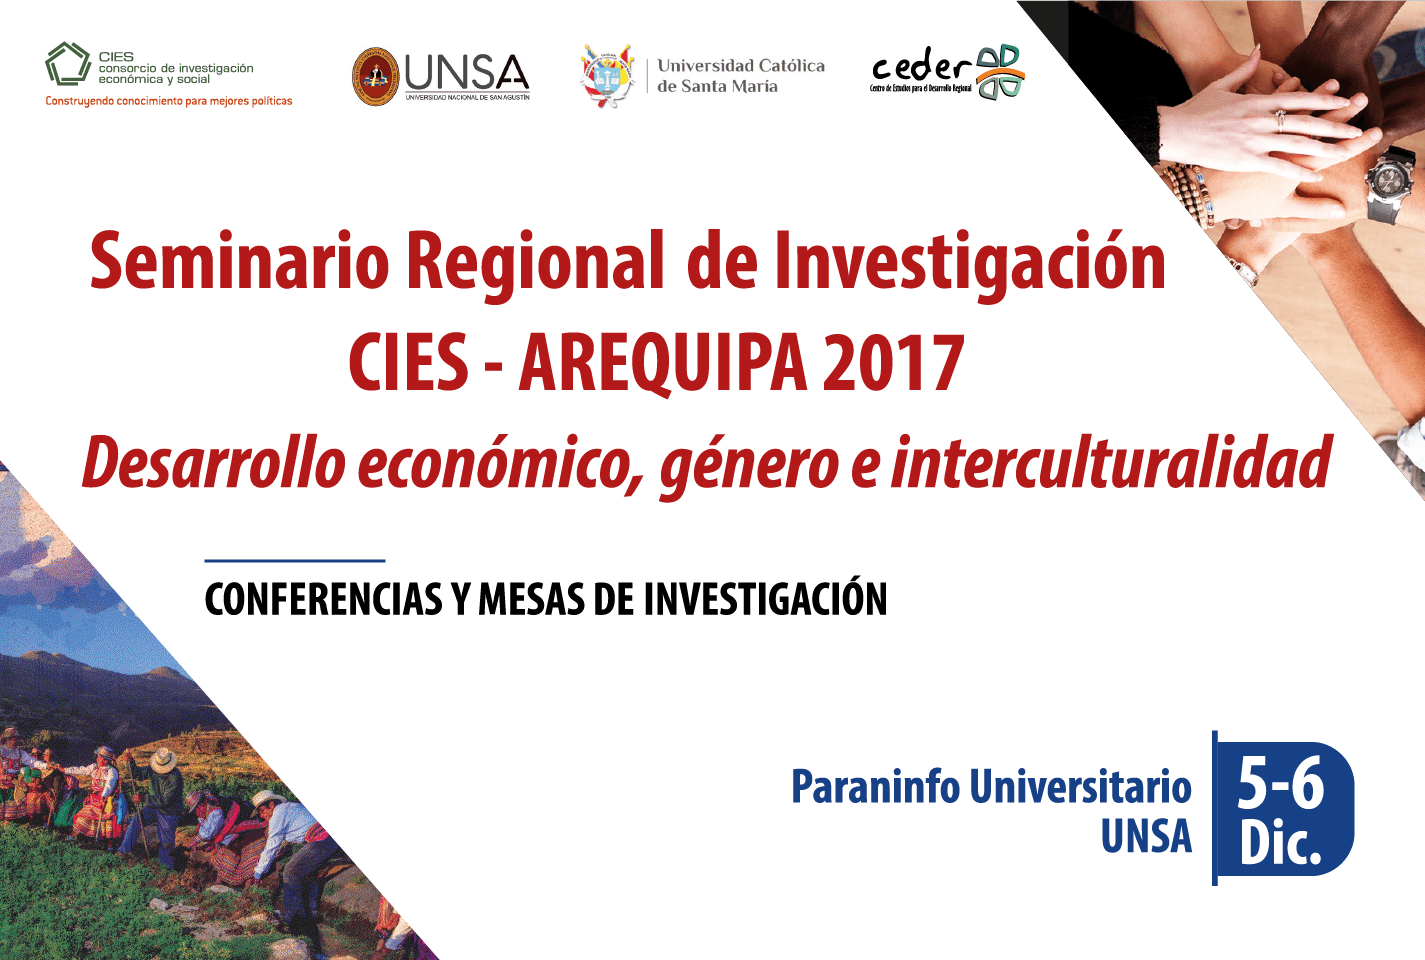 INVITACION Seminario Regional de Investigación CIES en Arequipa 2017